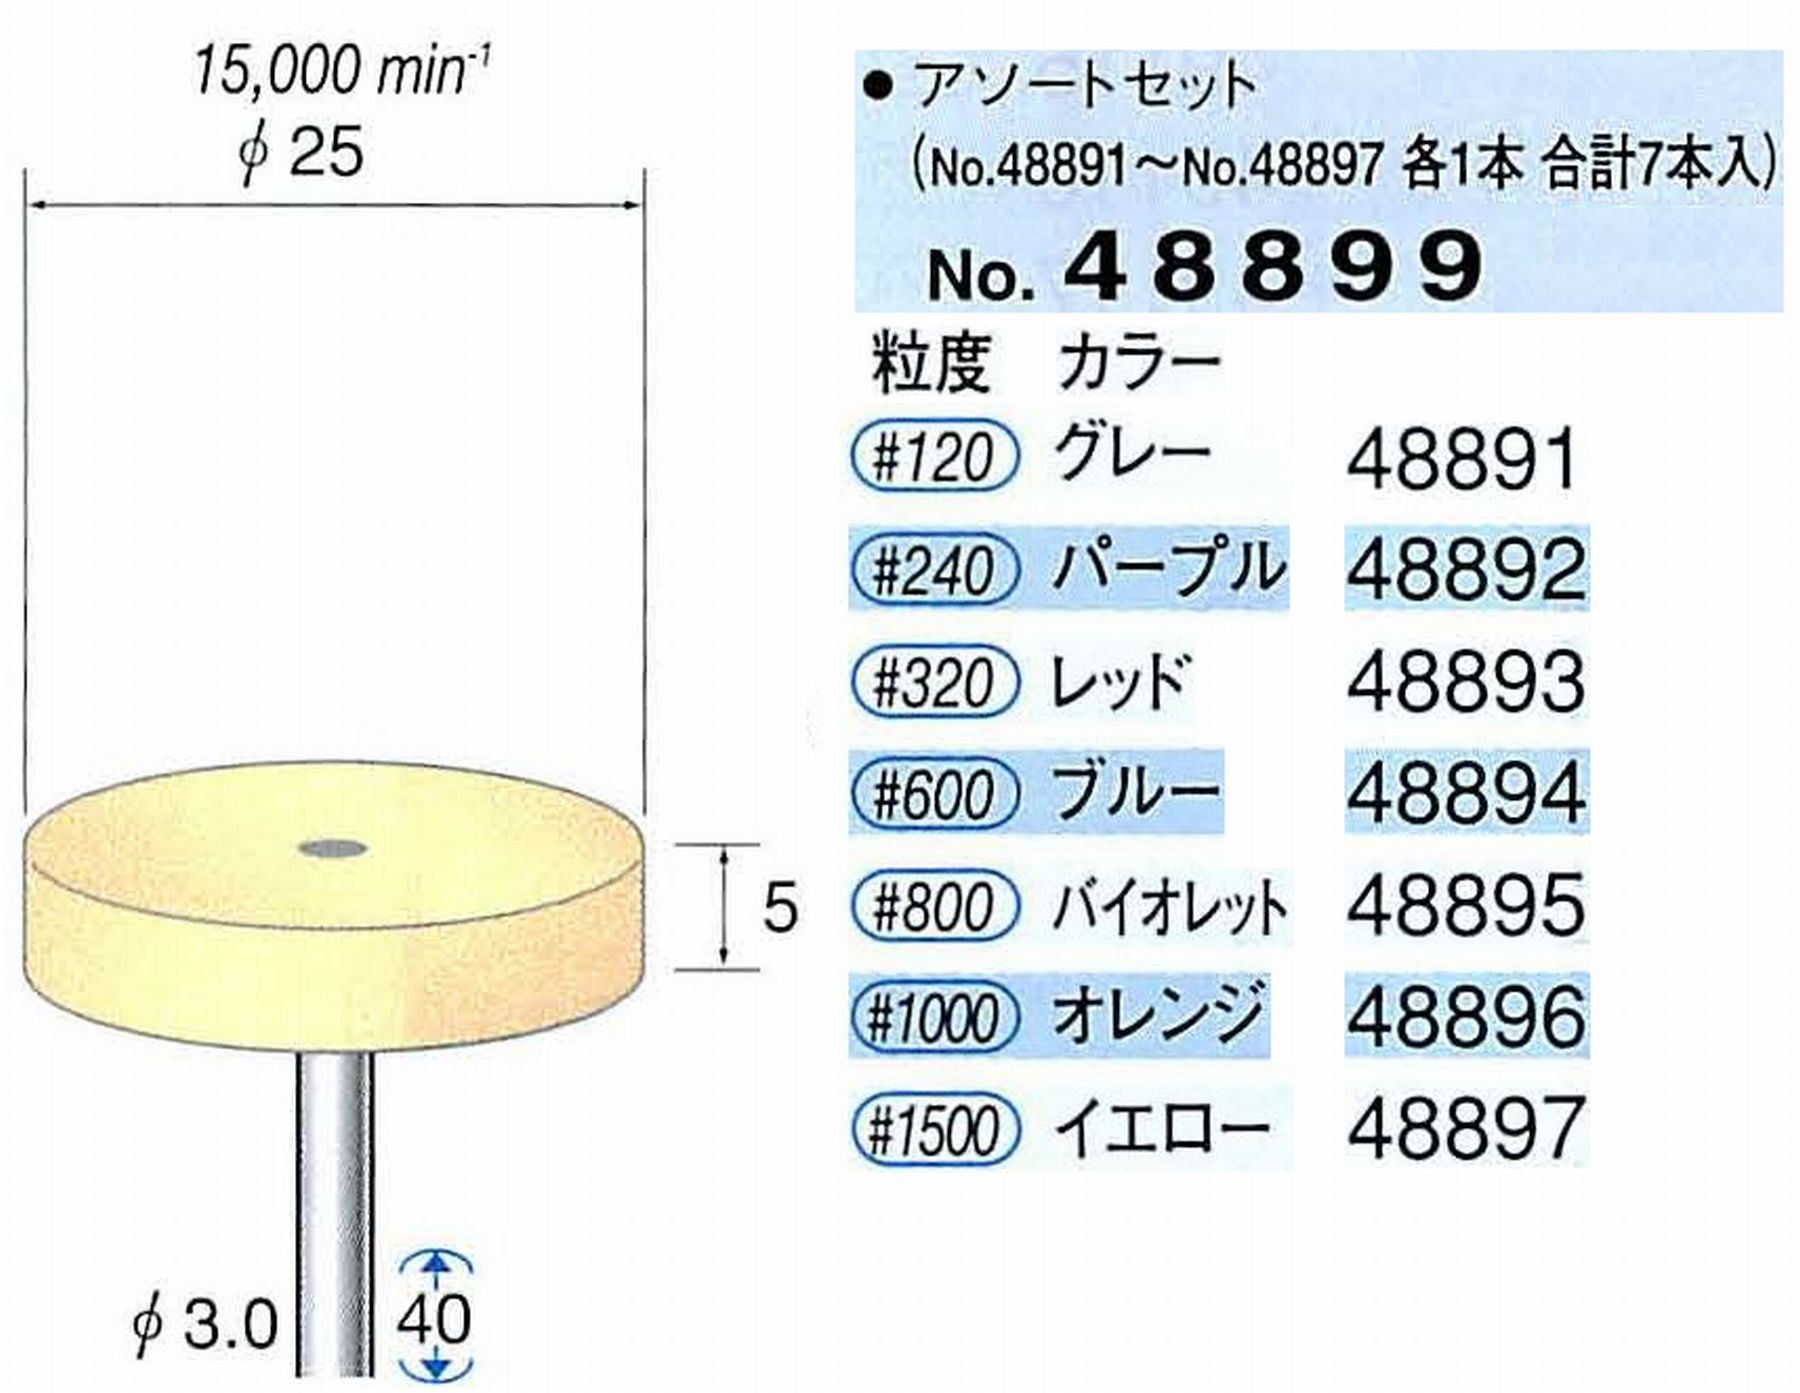 ナカニシ/NAKANISHI ポリッシュサンダー アソートセット 軸径(シャンク)φ3.0mm 48899